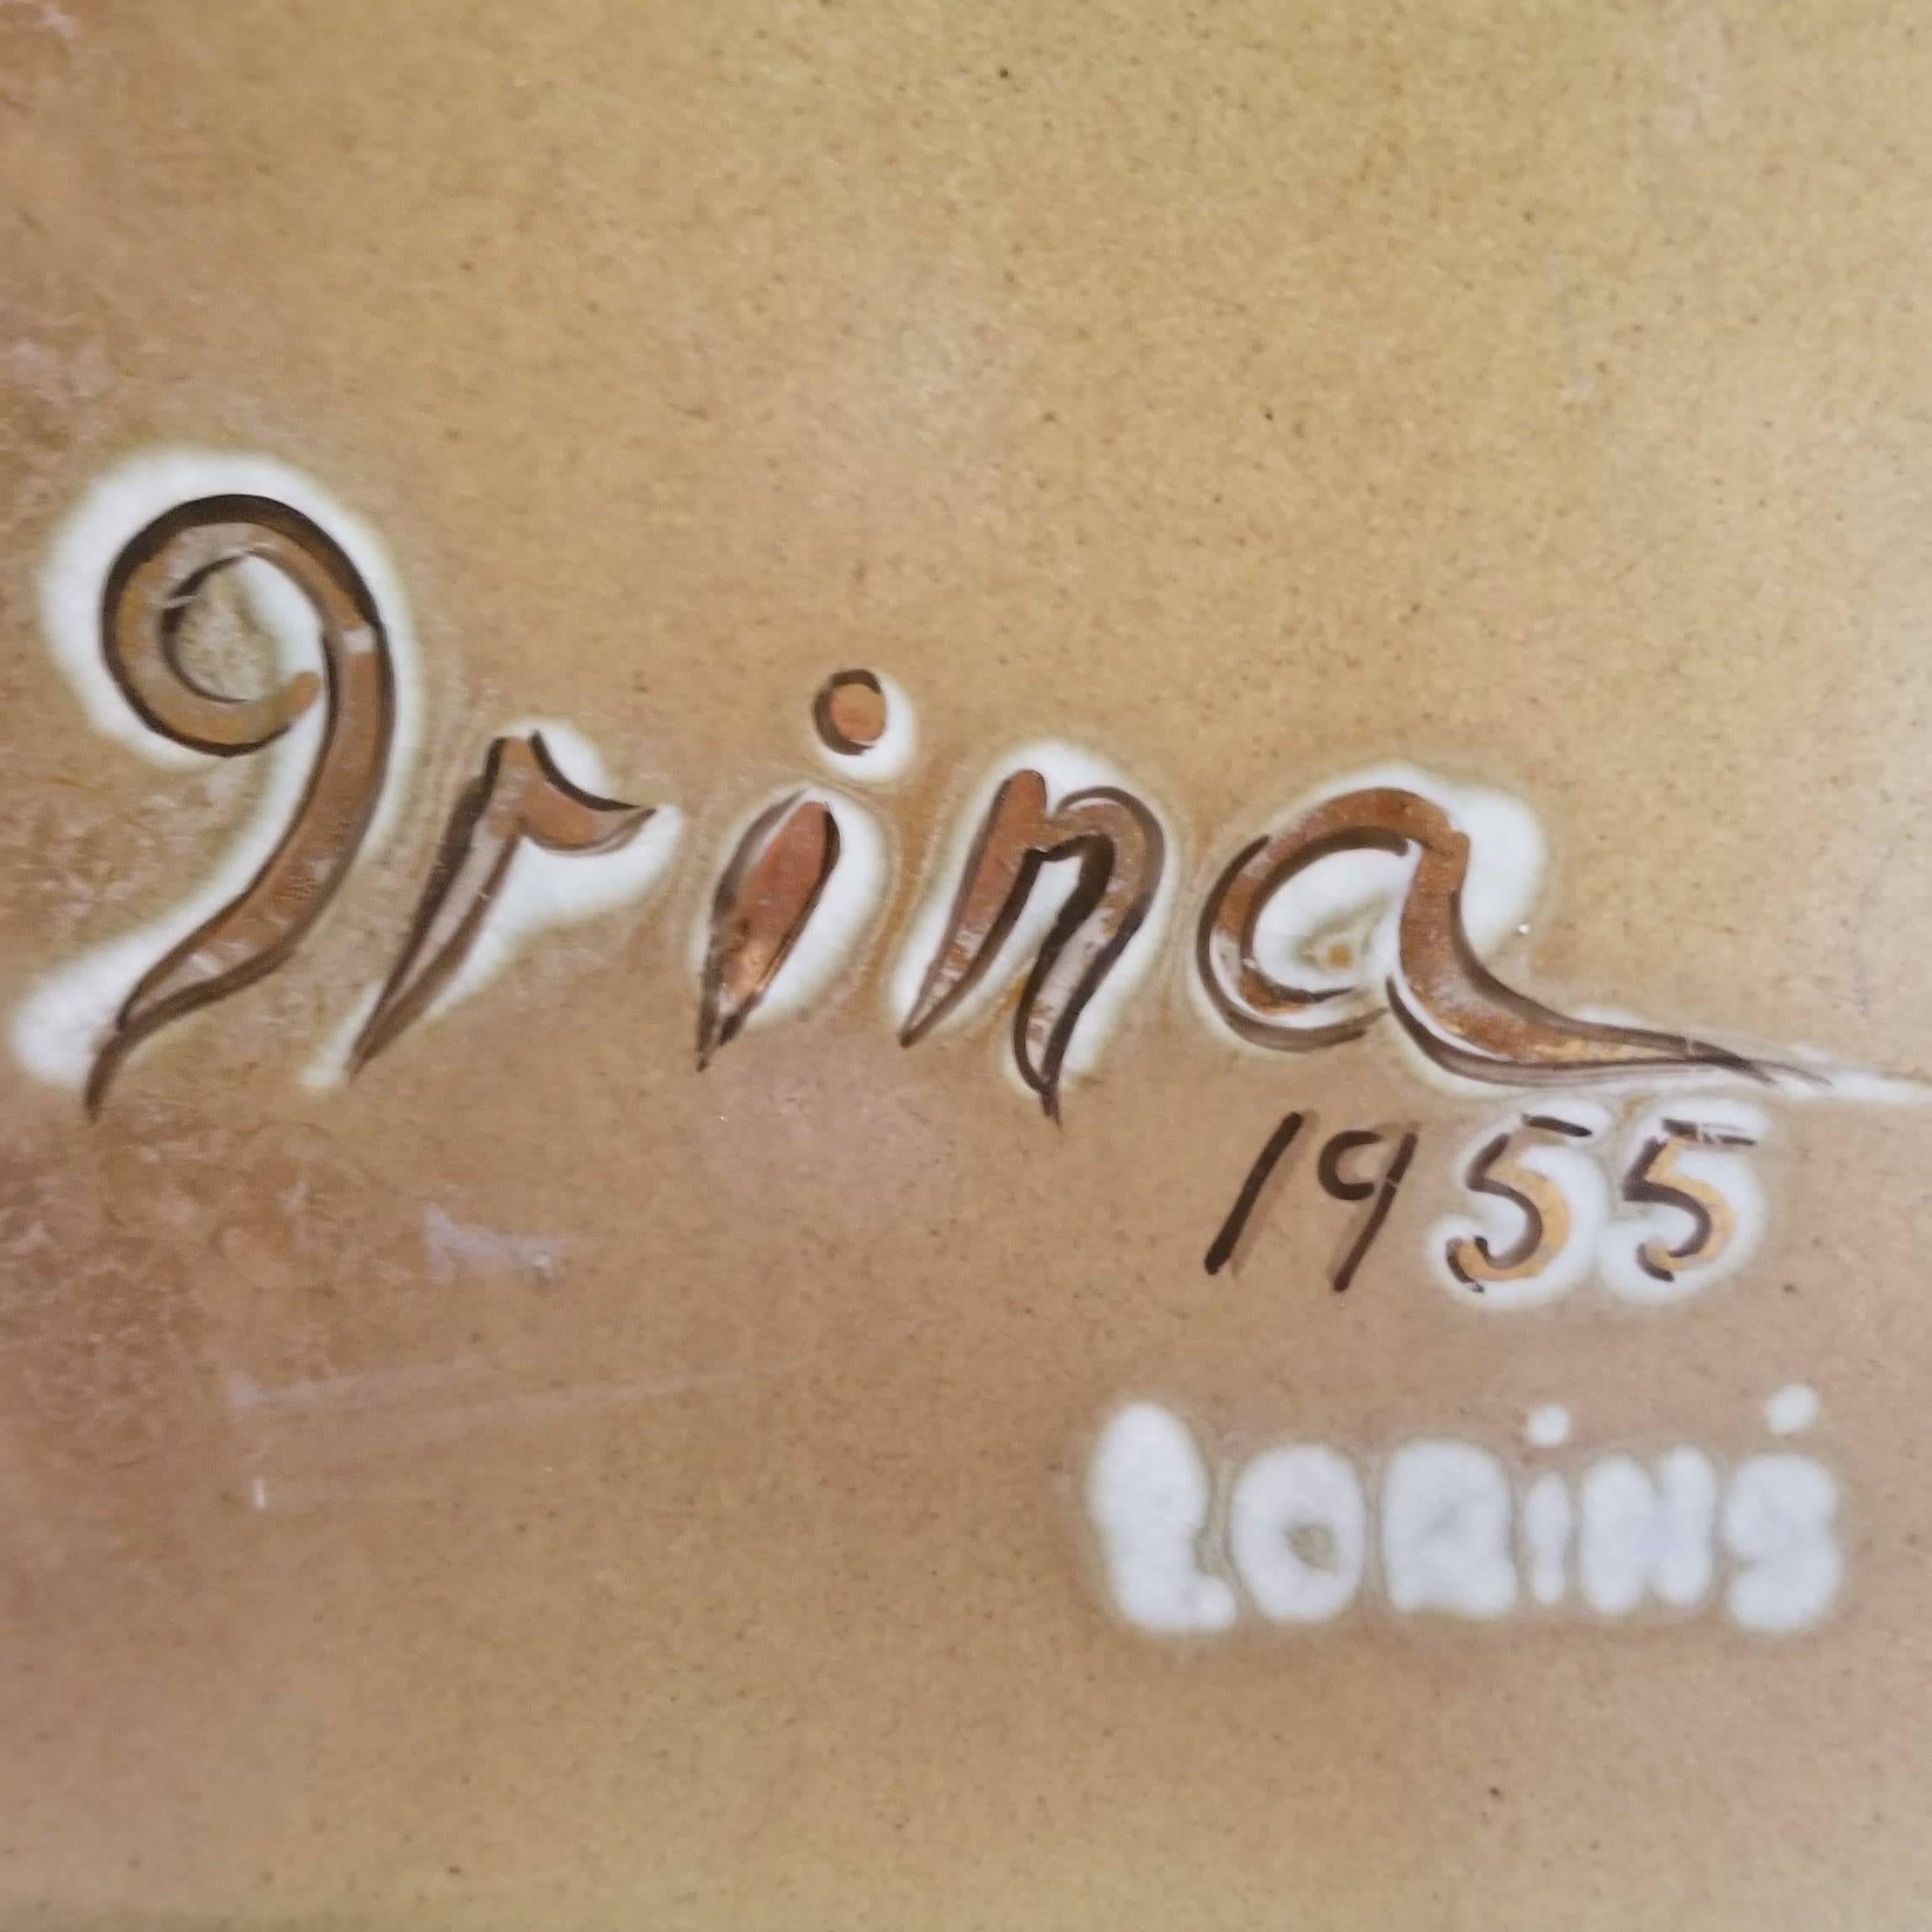 1955 Irina Lorin Tango Dancers Tile Wall Art For Sale 2